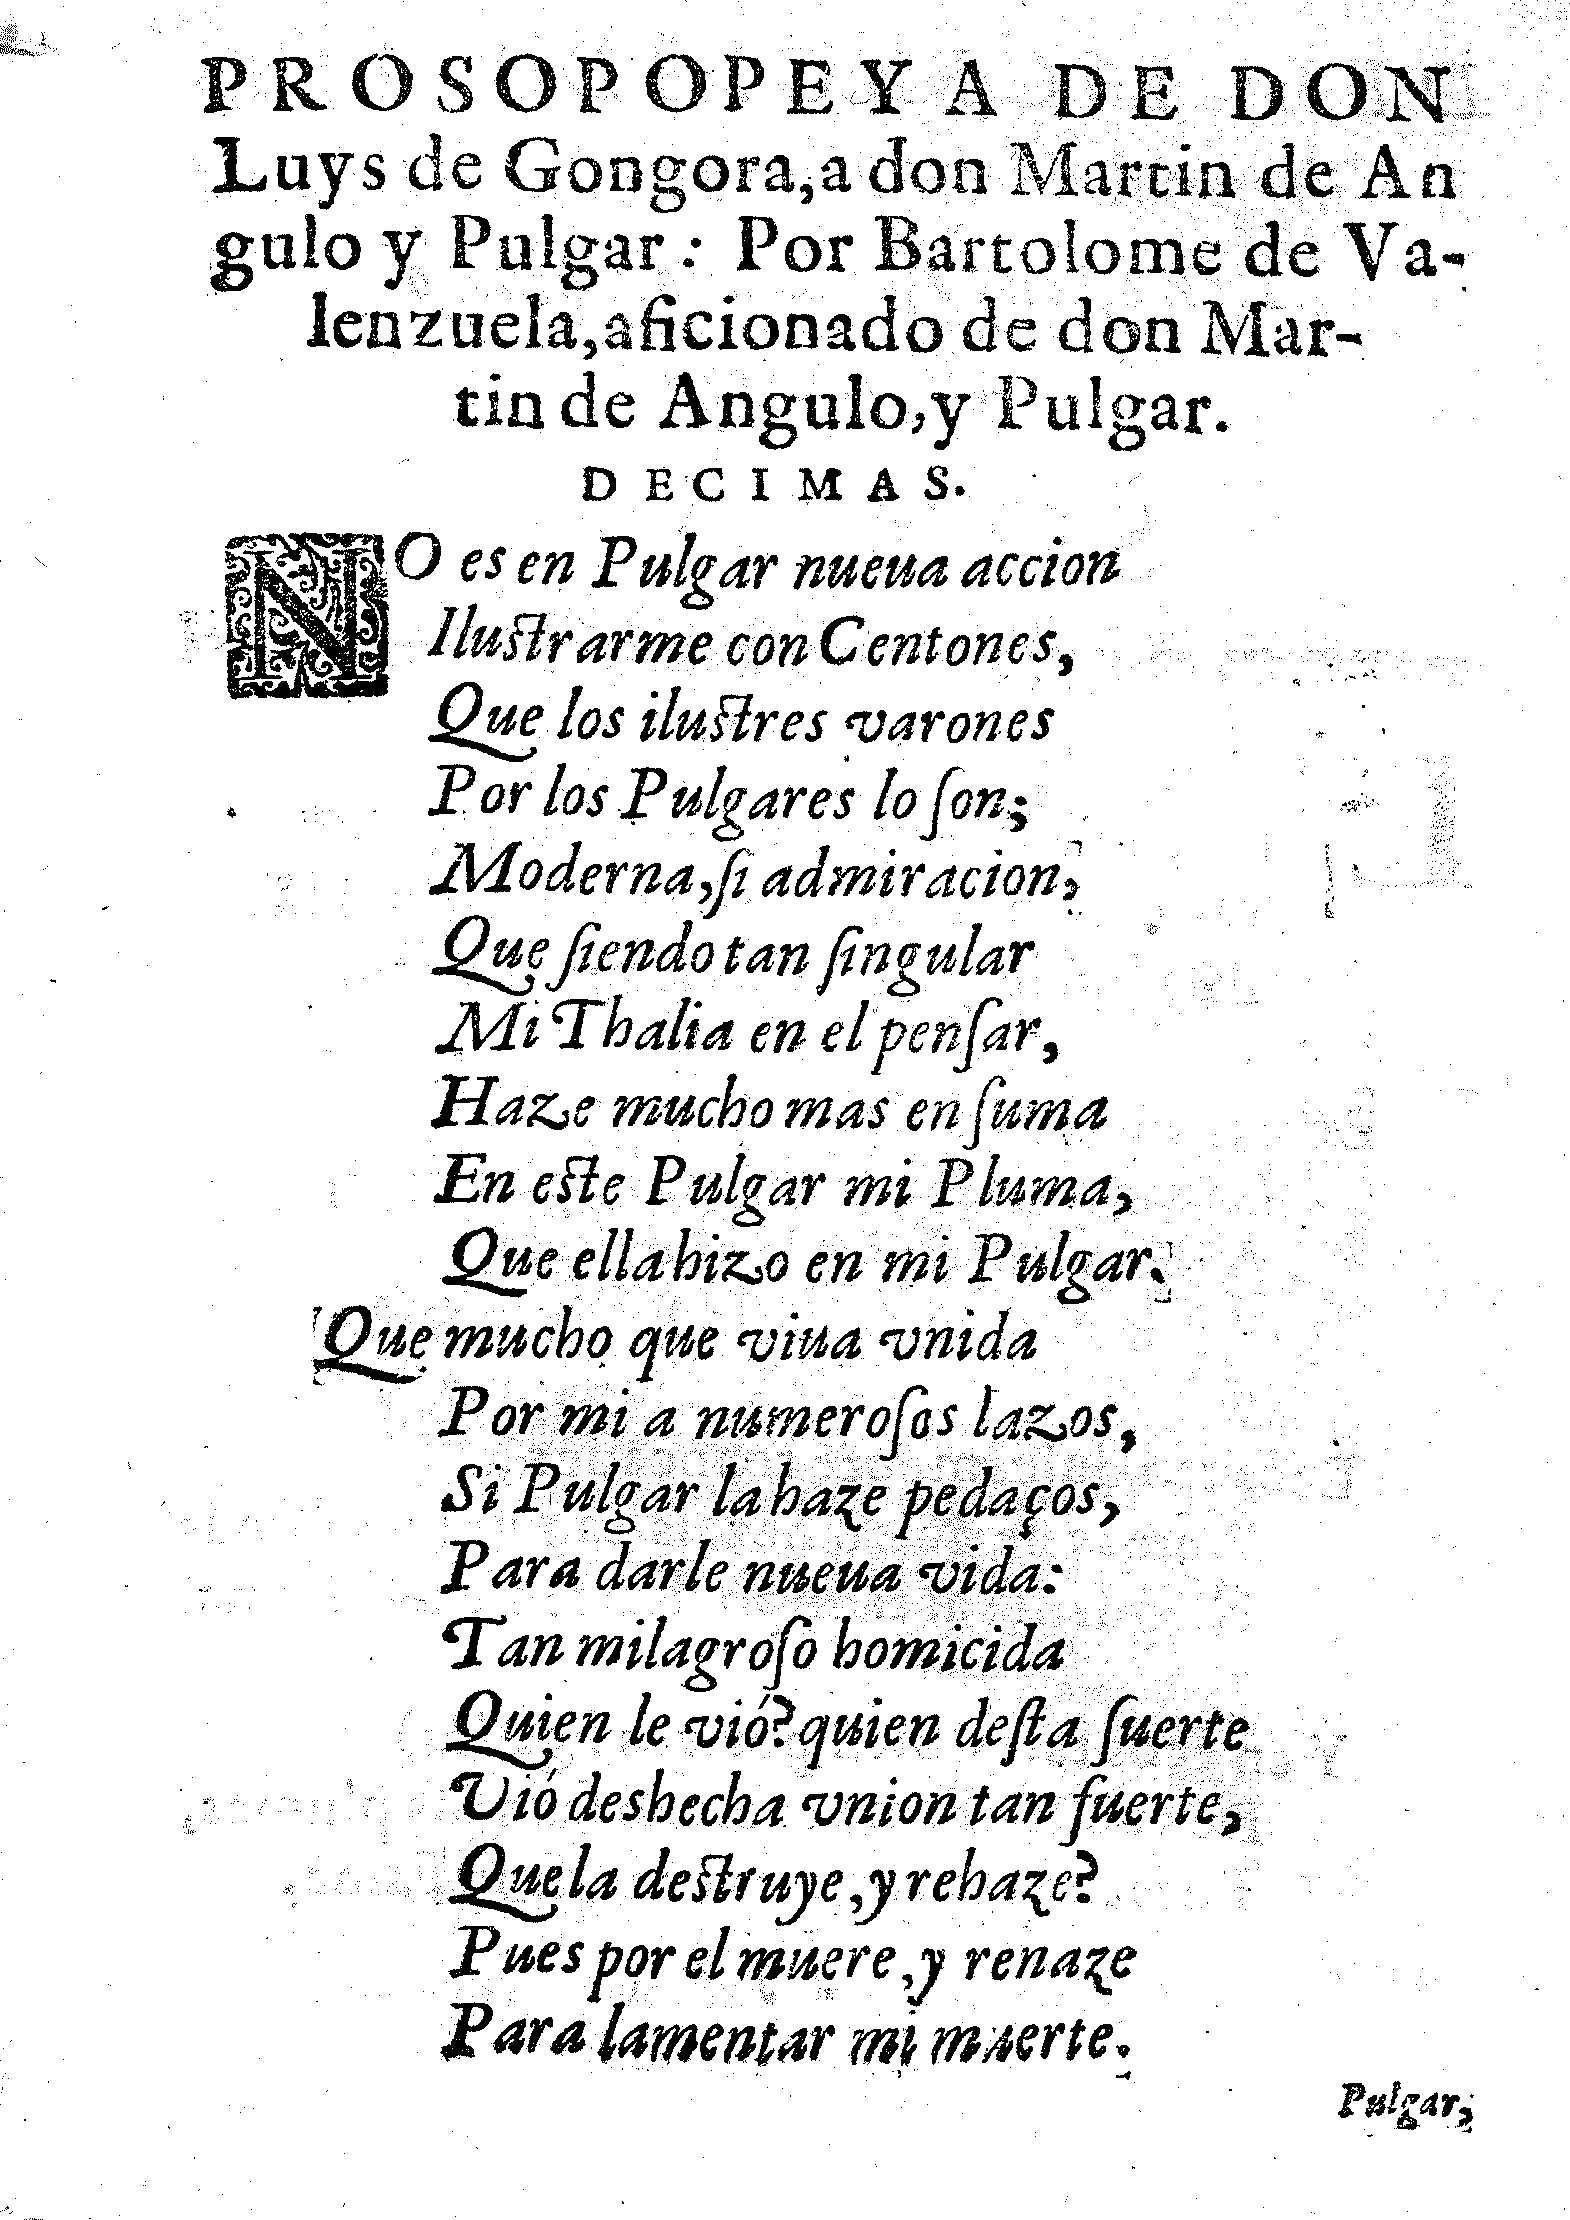 Prosopopeya de Don Luys de Gongora, a don Martin de Angulo y Pulgar ...